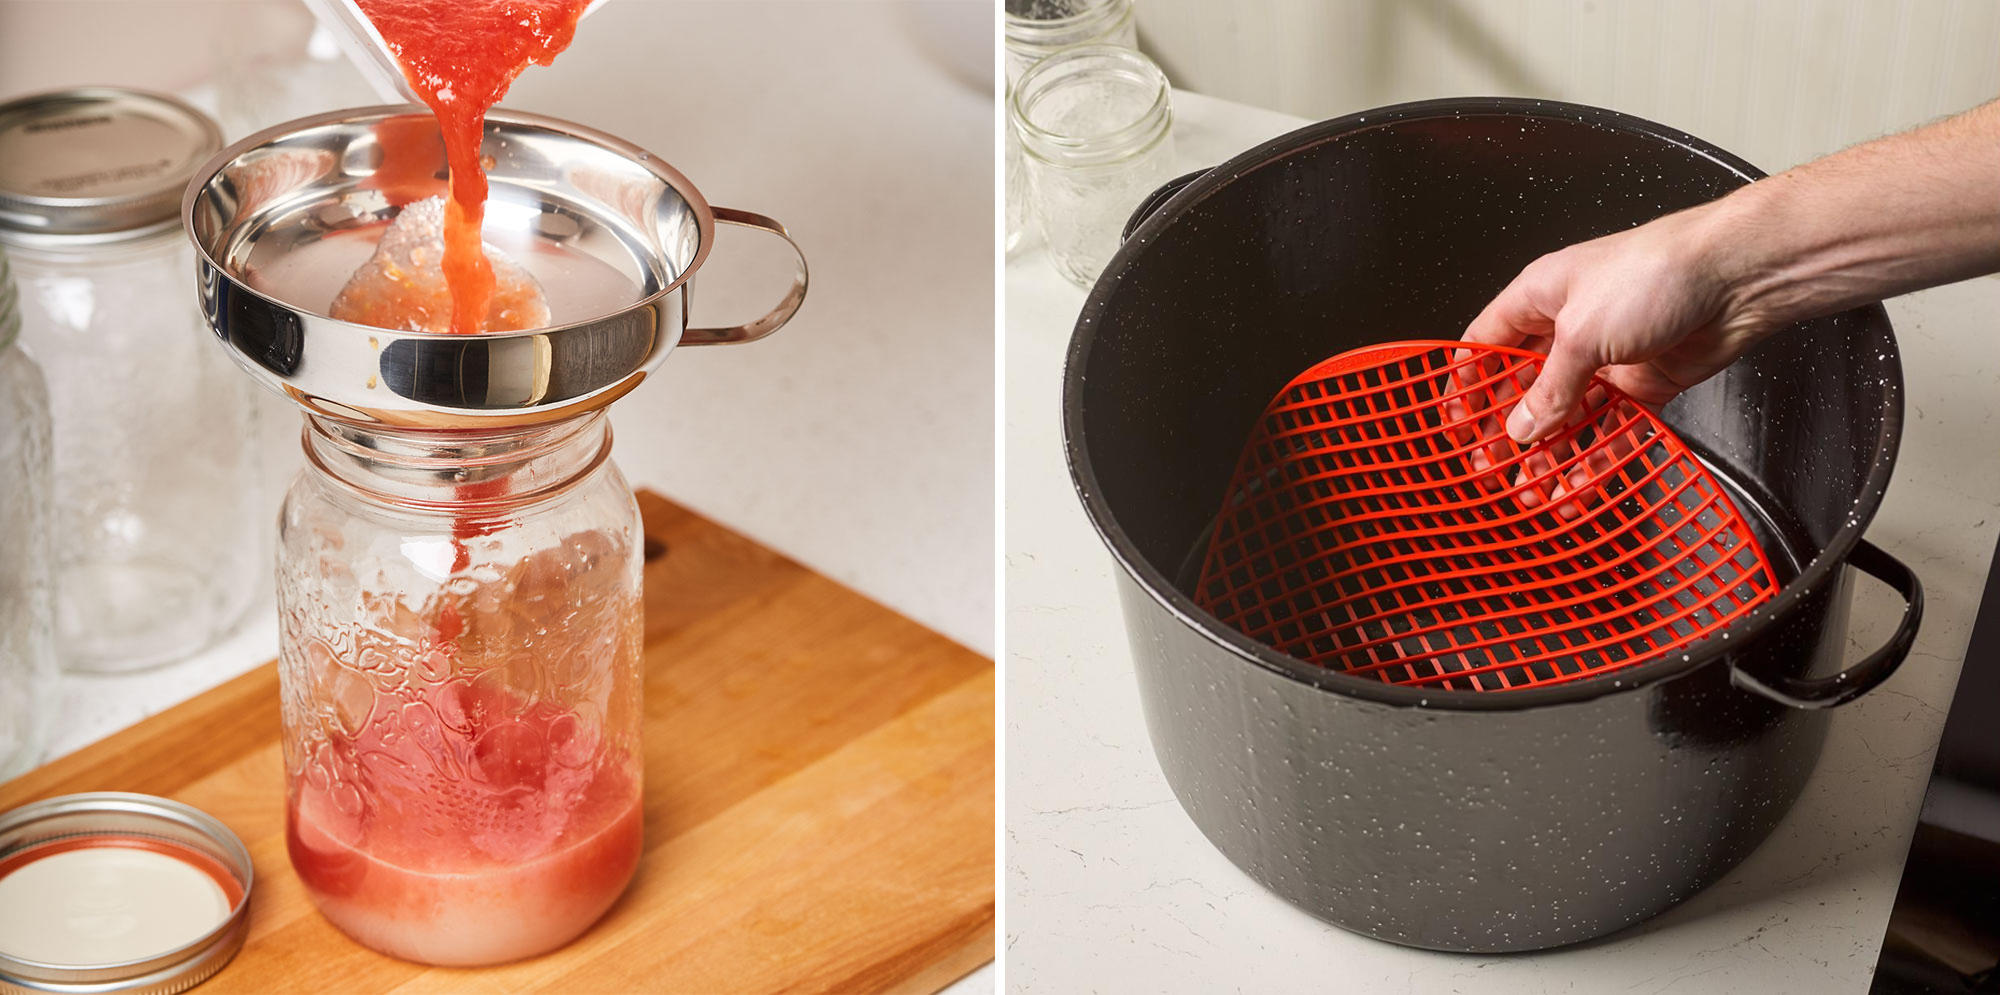 Image de gauche : Personne utilisant un entonnoir pour remplir un bocal de purée de tomates. Image de droite : Support à bocaux en silicone